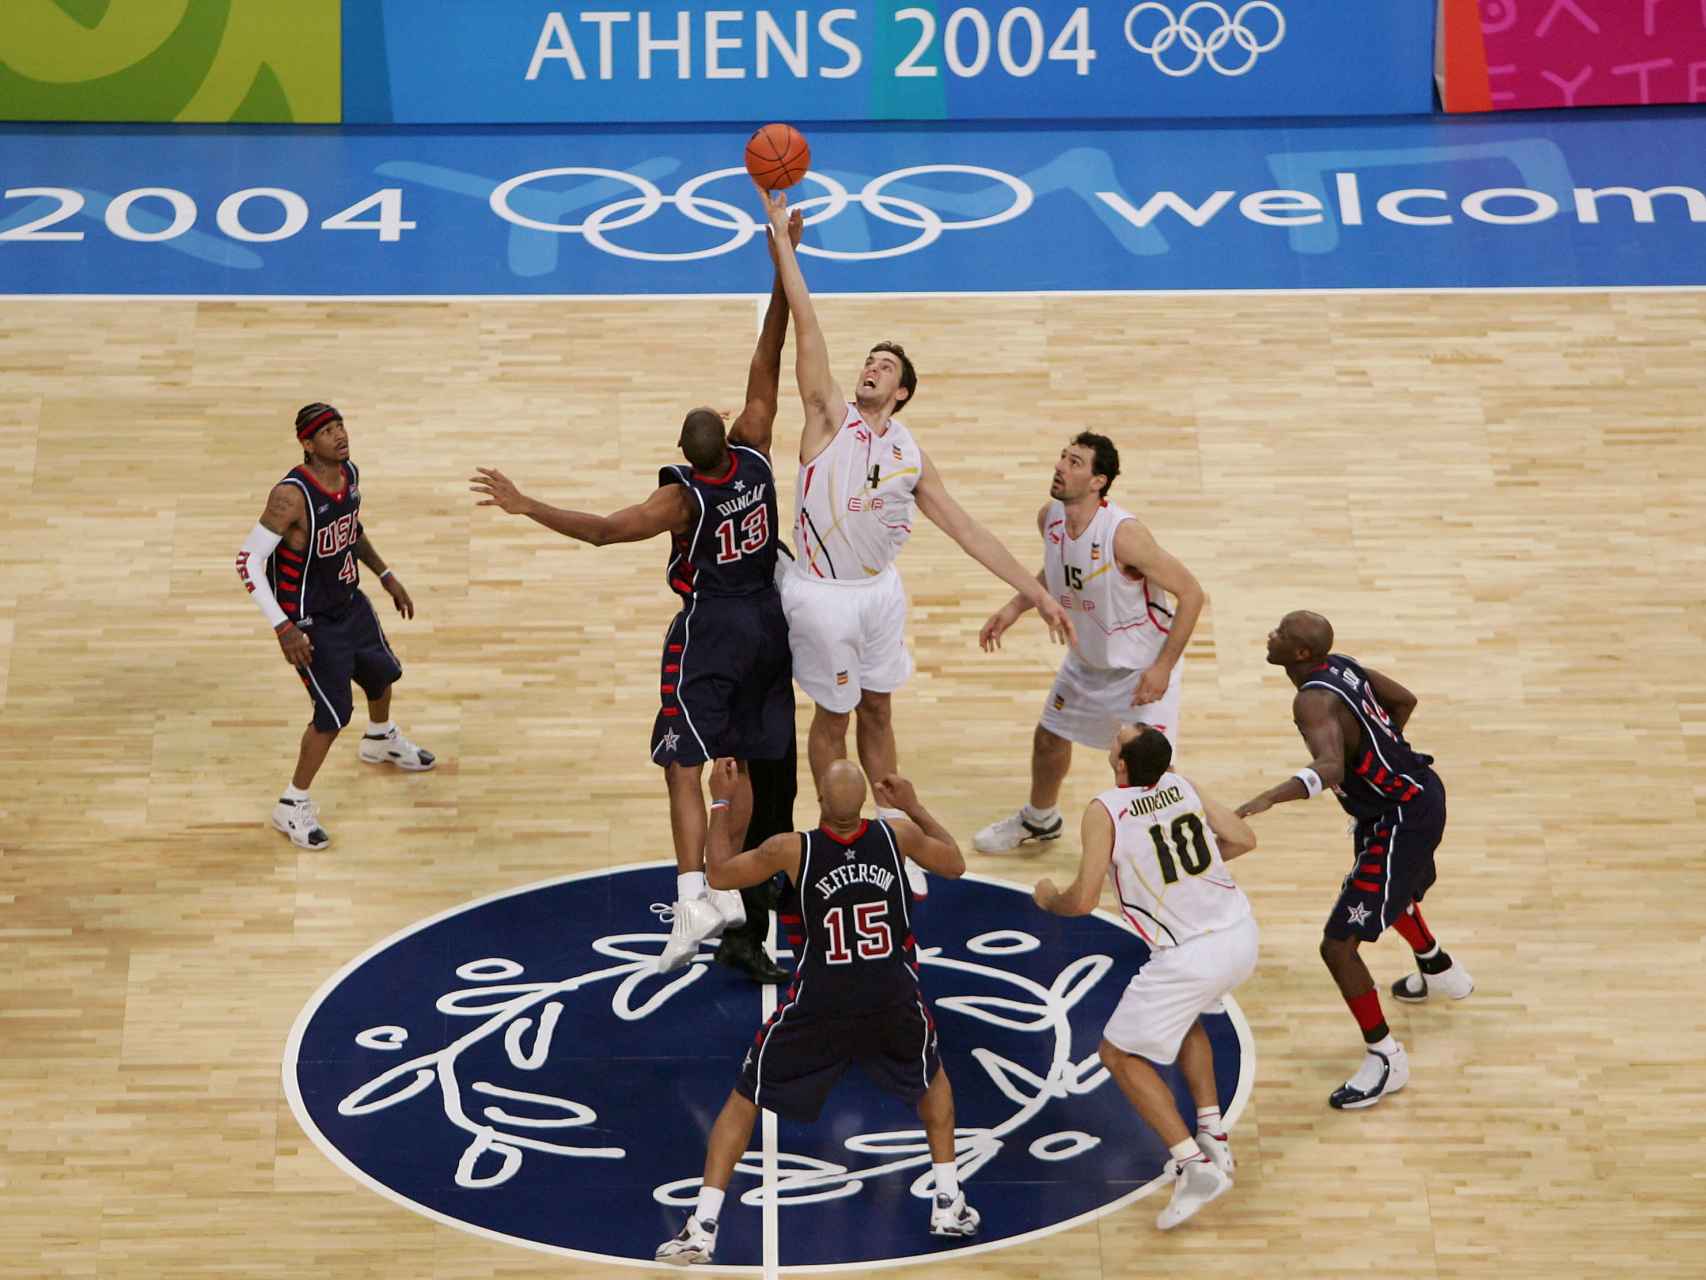 Duncan y Pau Gasol en el salto inicial del España-USA de Atenas 2004.